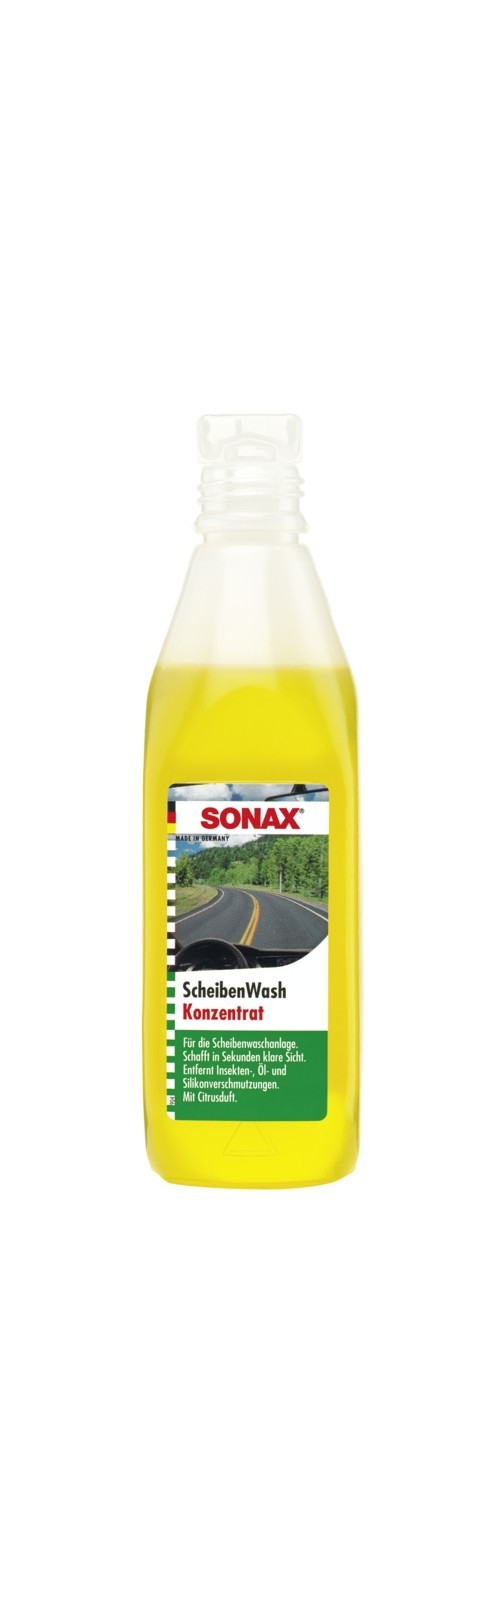 SONAX ScheibenWash Konzentrat (250 ml), Art.-Nr. 02602000